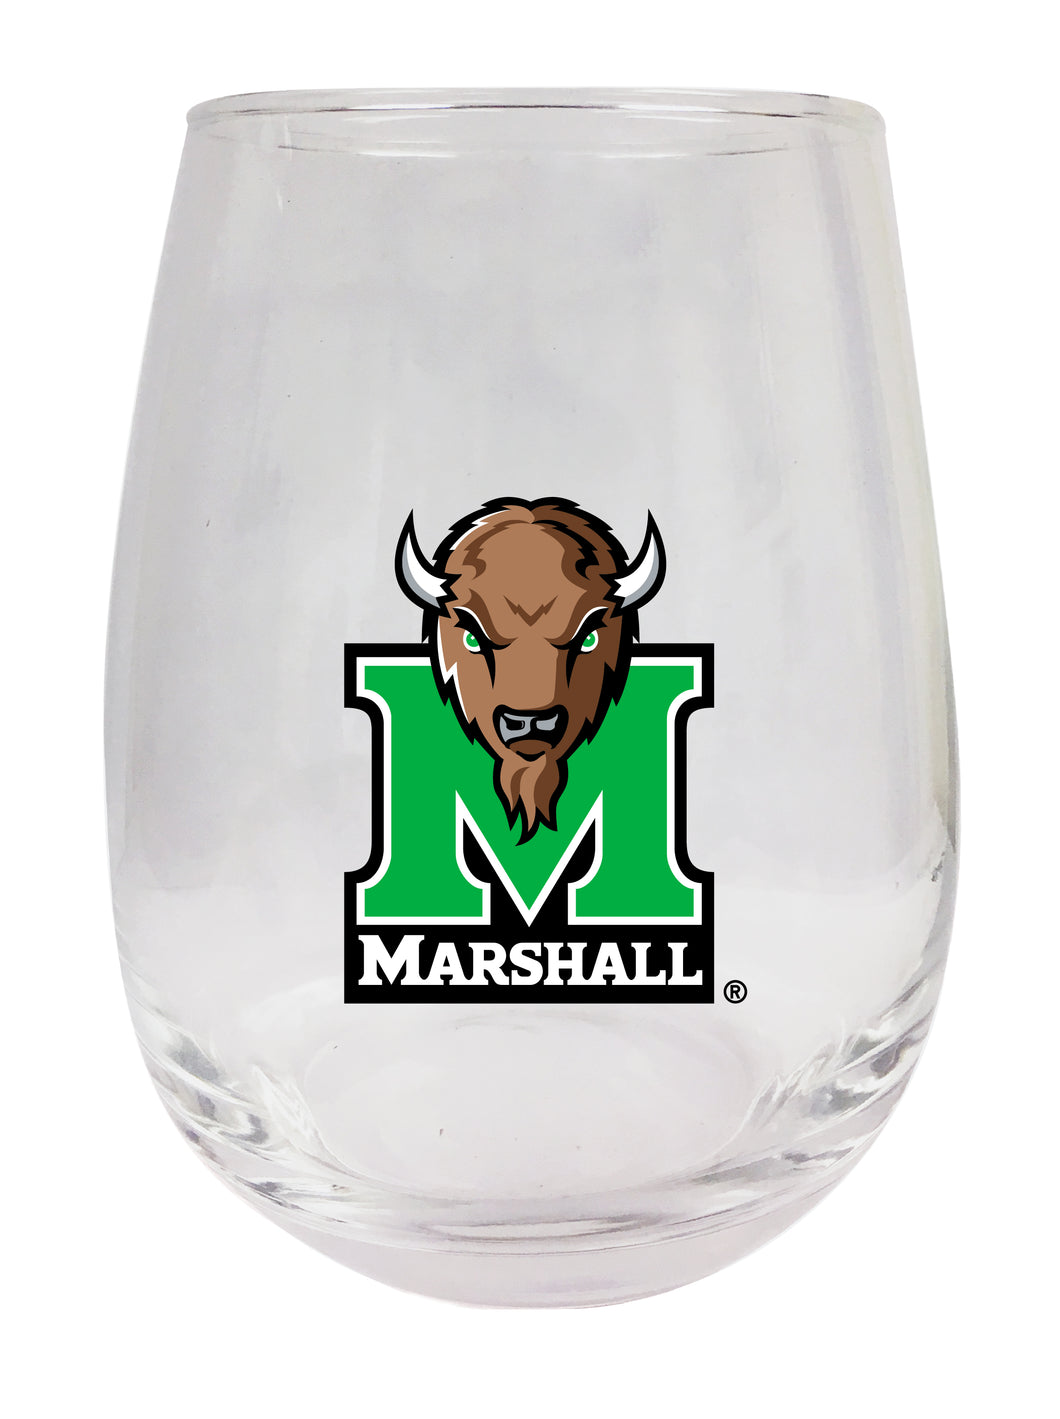 Marshall Thundering Herd Stemless Wine Glass - 9 oz. | Officially Licensed NCAA Merchandise